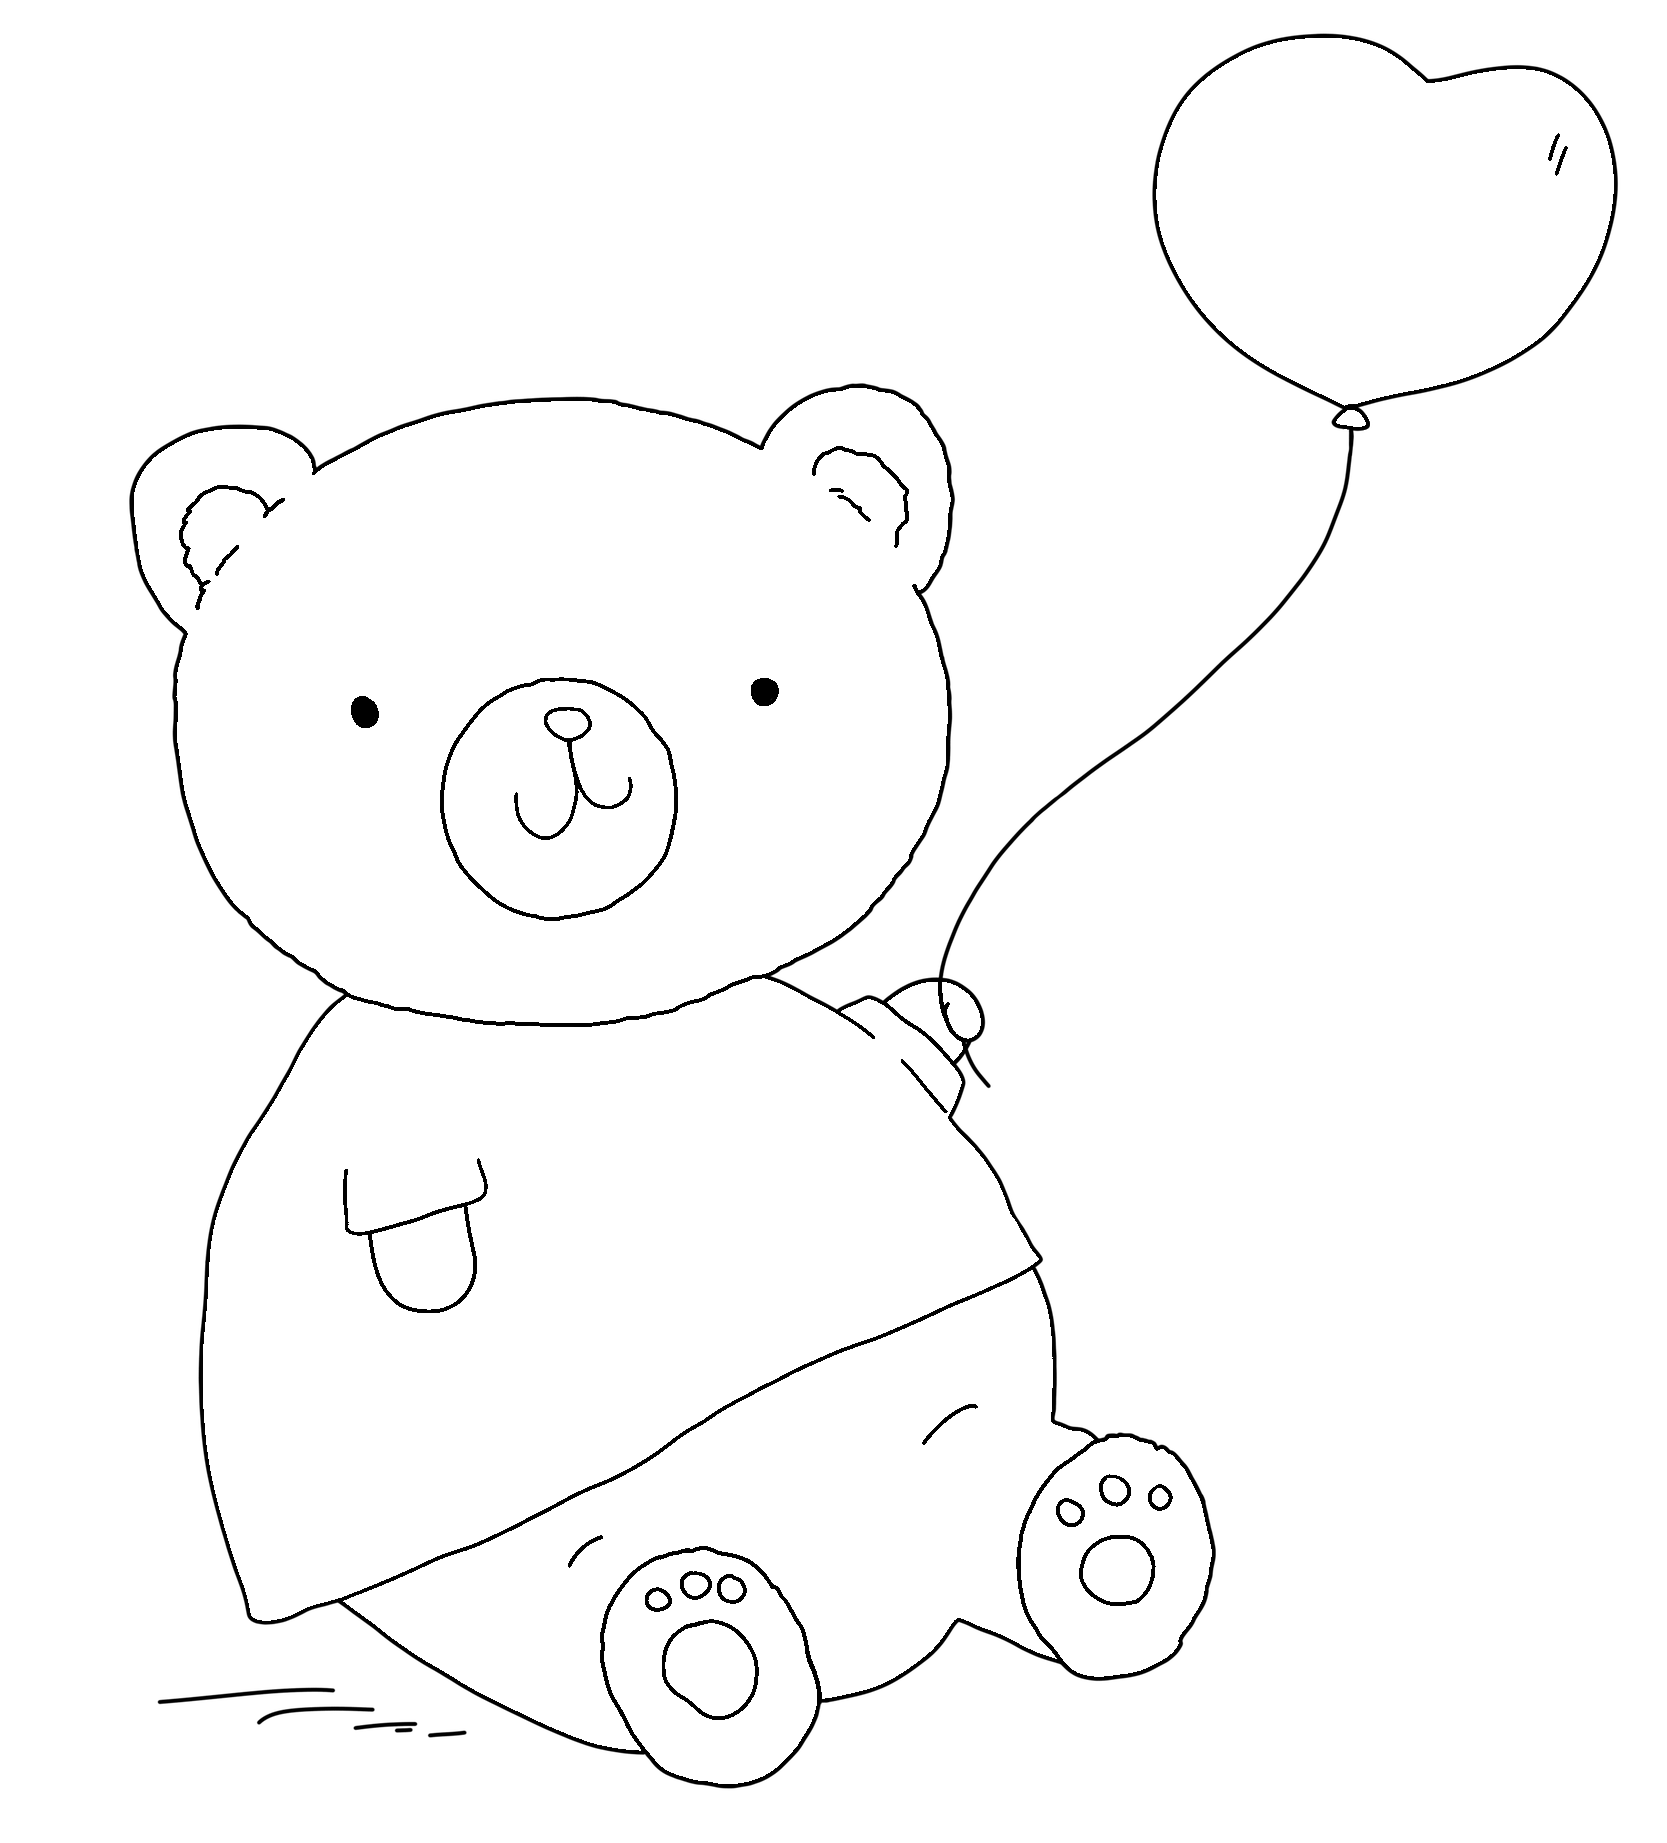 Disegno da colorare di orso con palloncino a forma di cuore